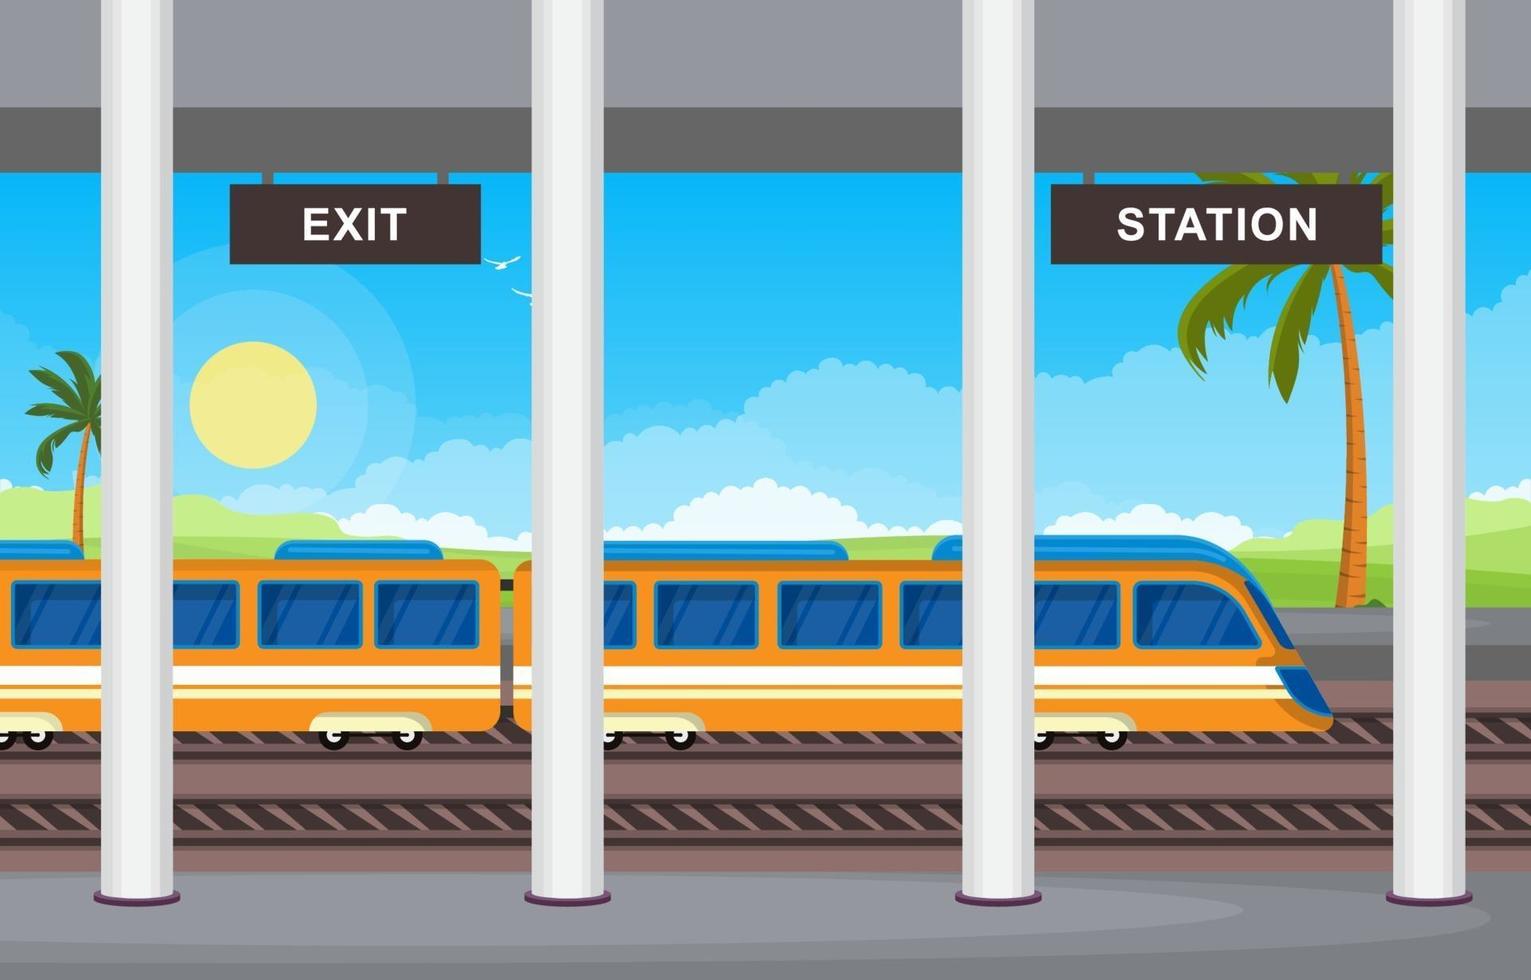 ferrovia transporte público suburbano metrô estação de trem ilustração plana vetor